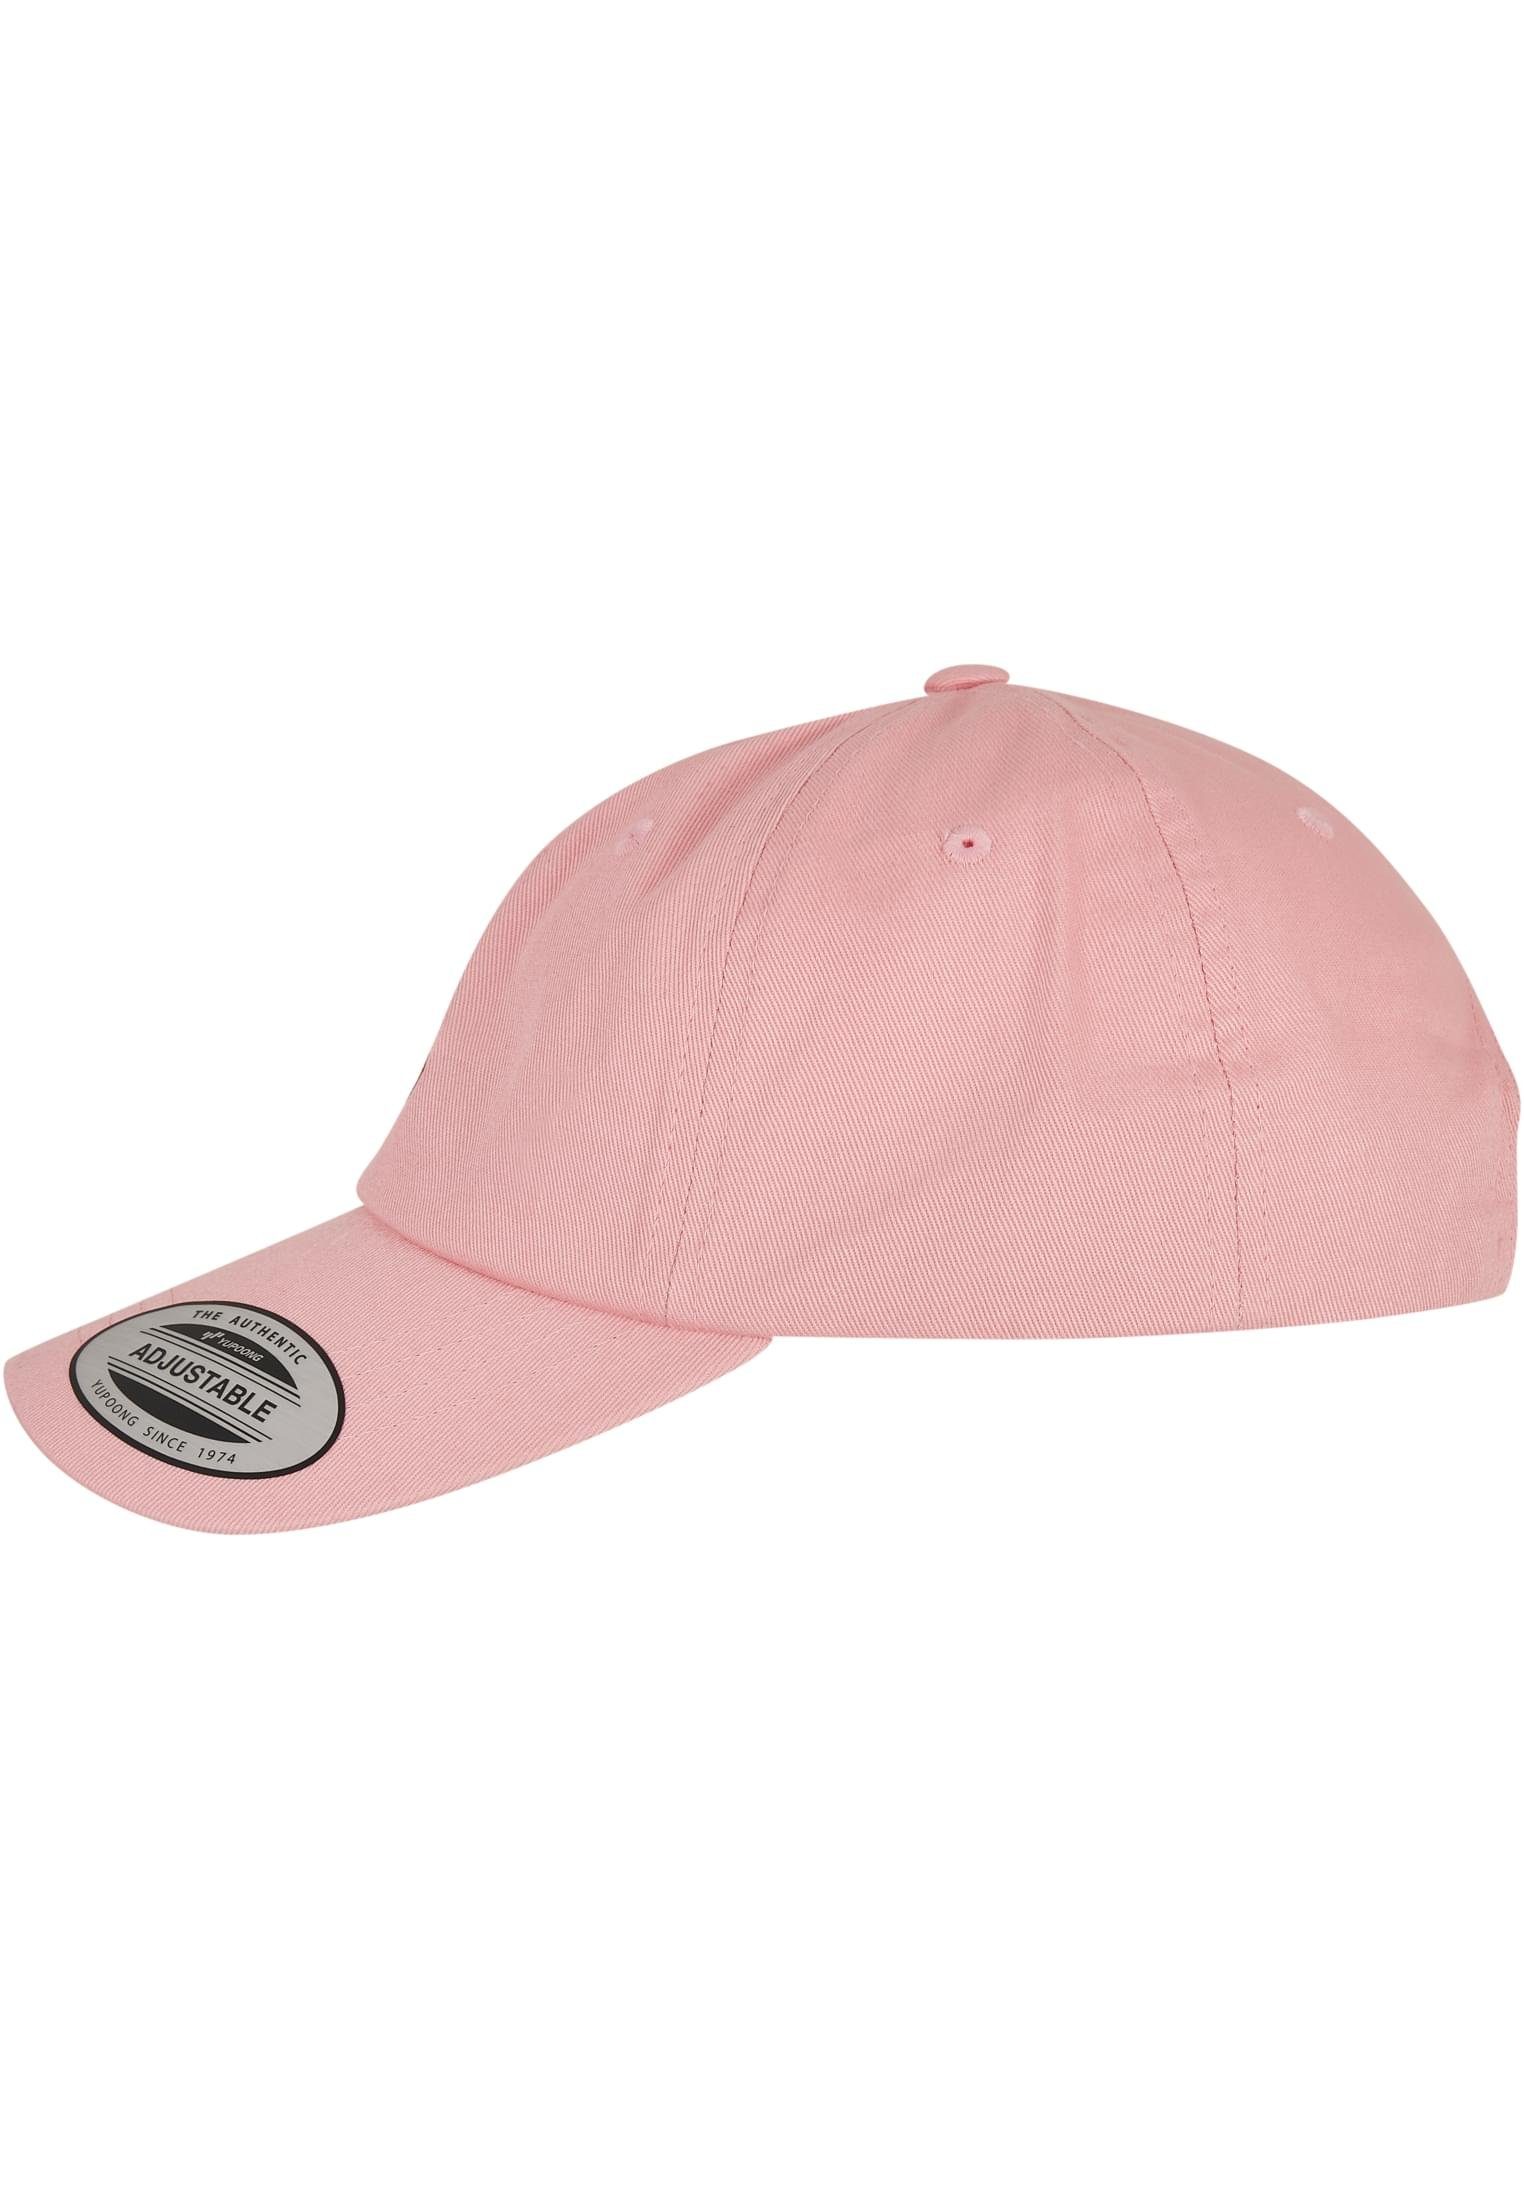 MisterTee Flex Cap Accessoires Letter Pink Low Profile Cap, Lässige Cap für  Männer und Frauen